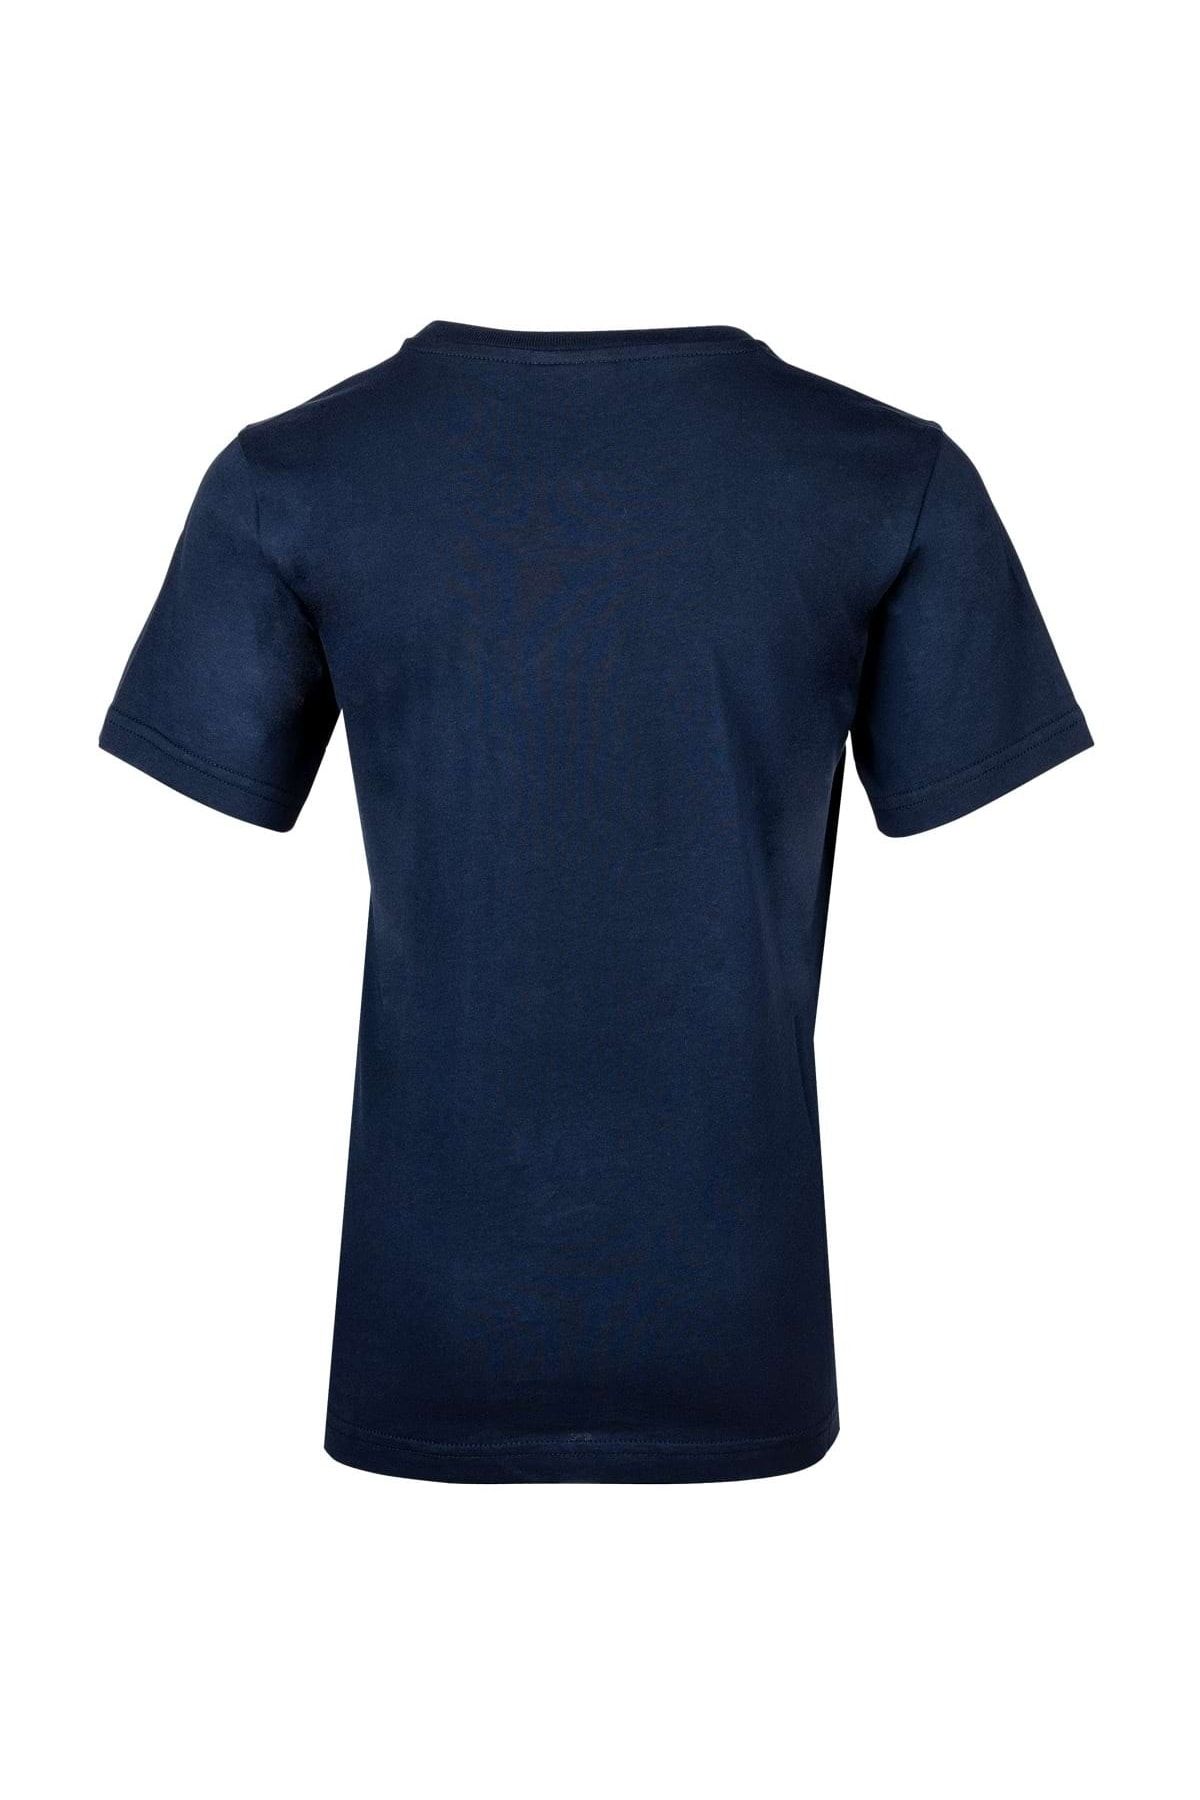 T-Shirt Champion Trendyol Kinder Baumwolle, Crewneck, - einfarbig Logo, großes - Rundhals, Unisex